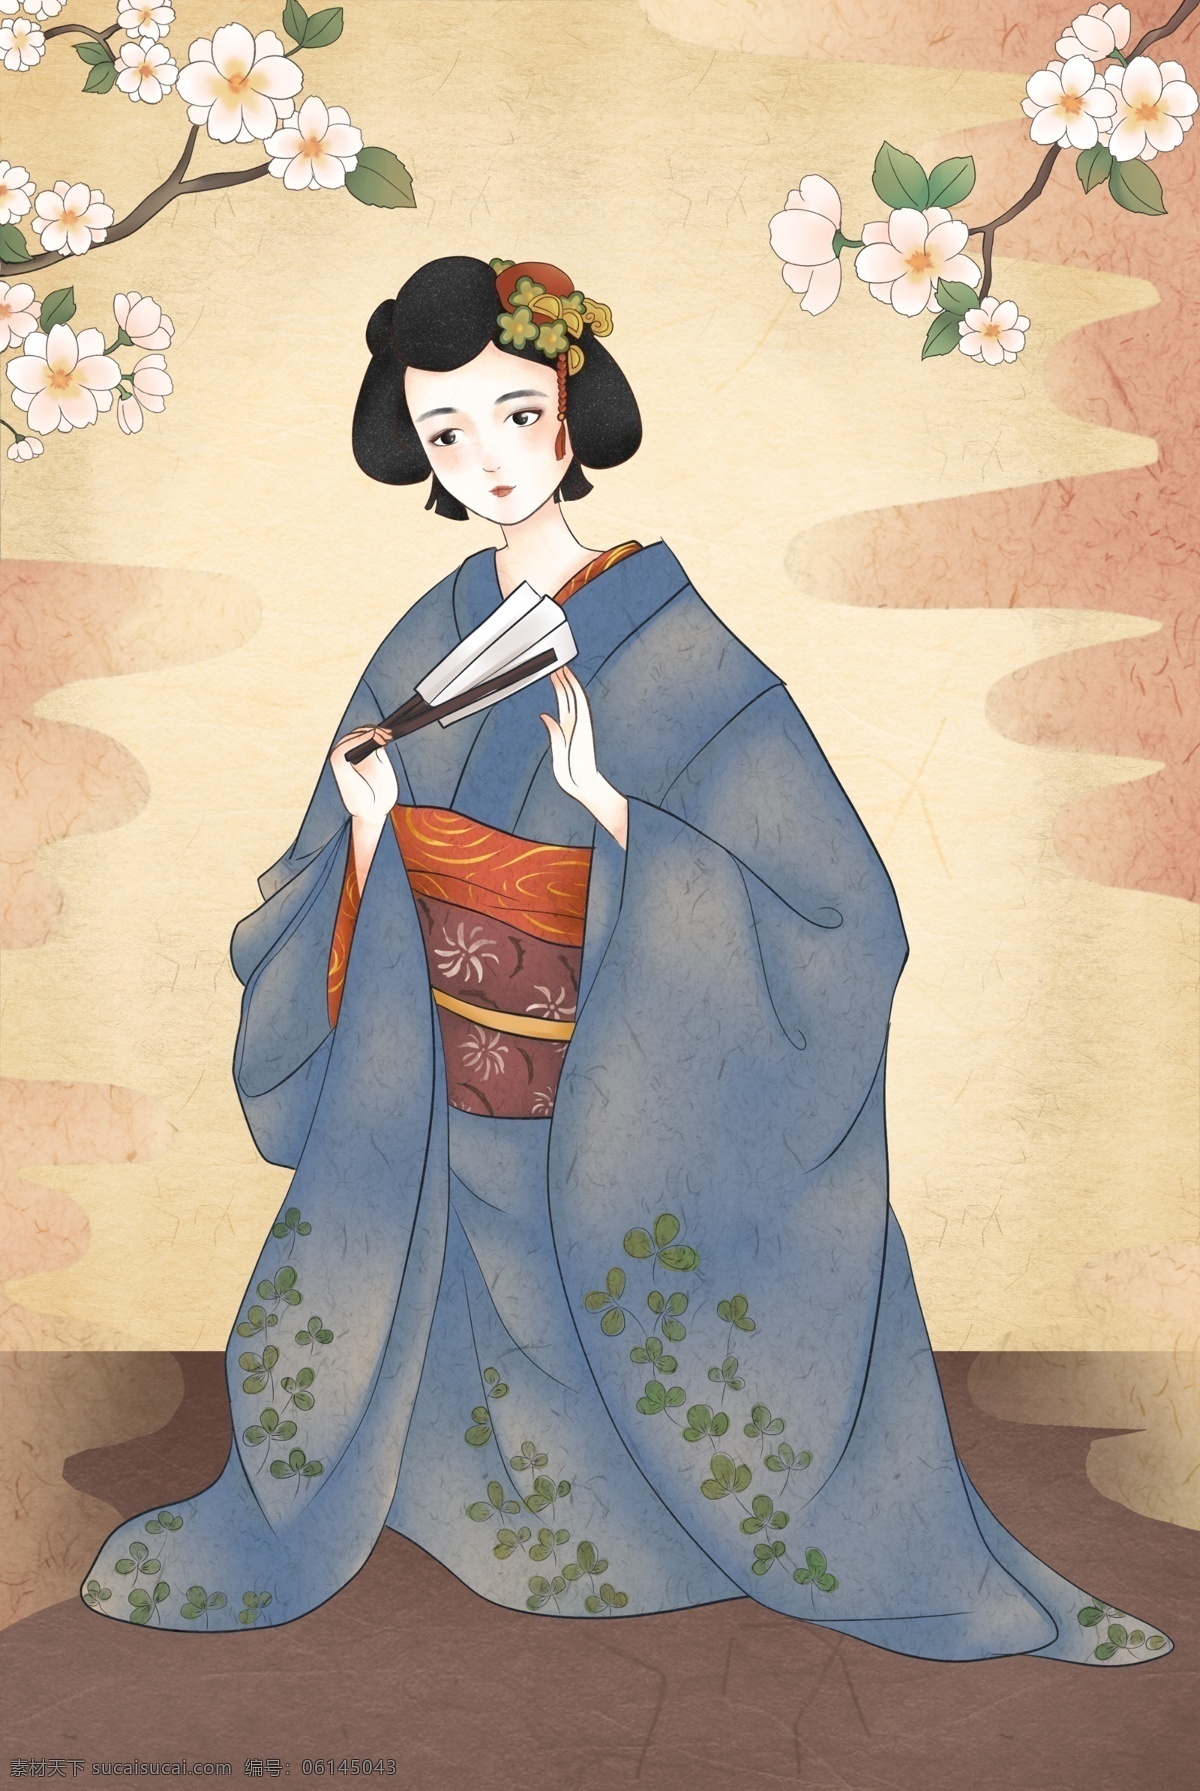 复古 手绘 日本 浮世绘 和服 人物 唯美 清新 仿古